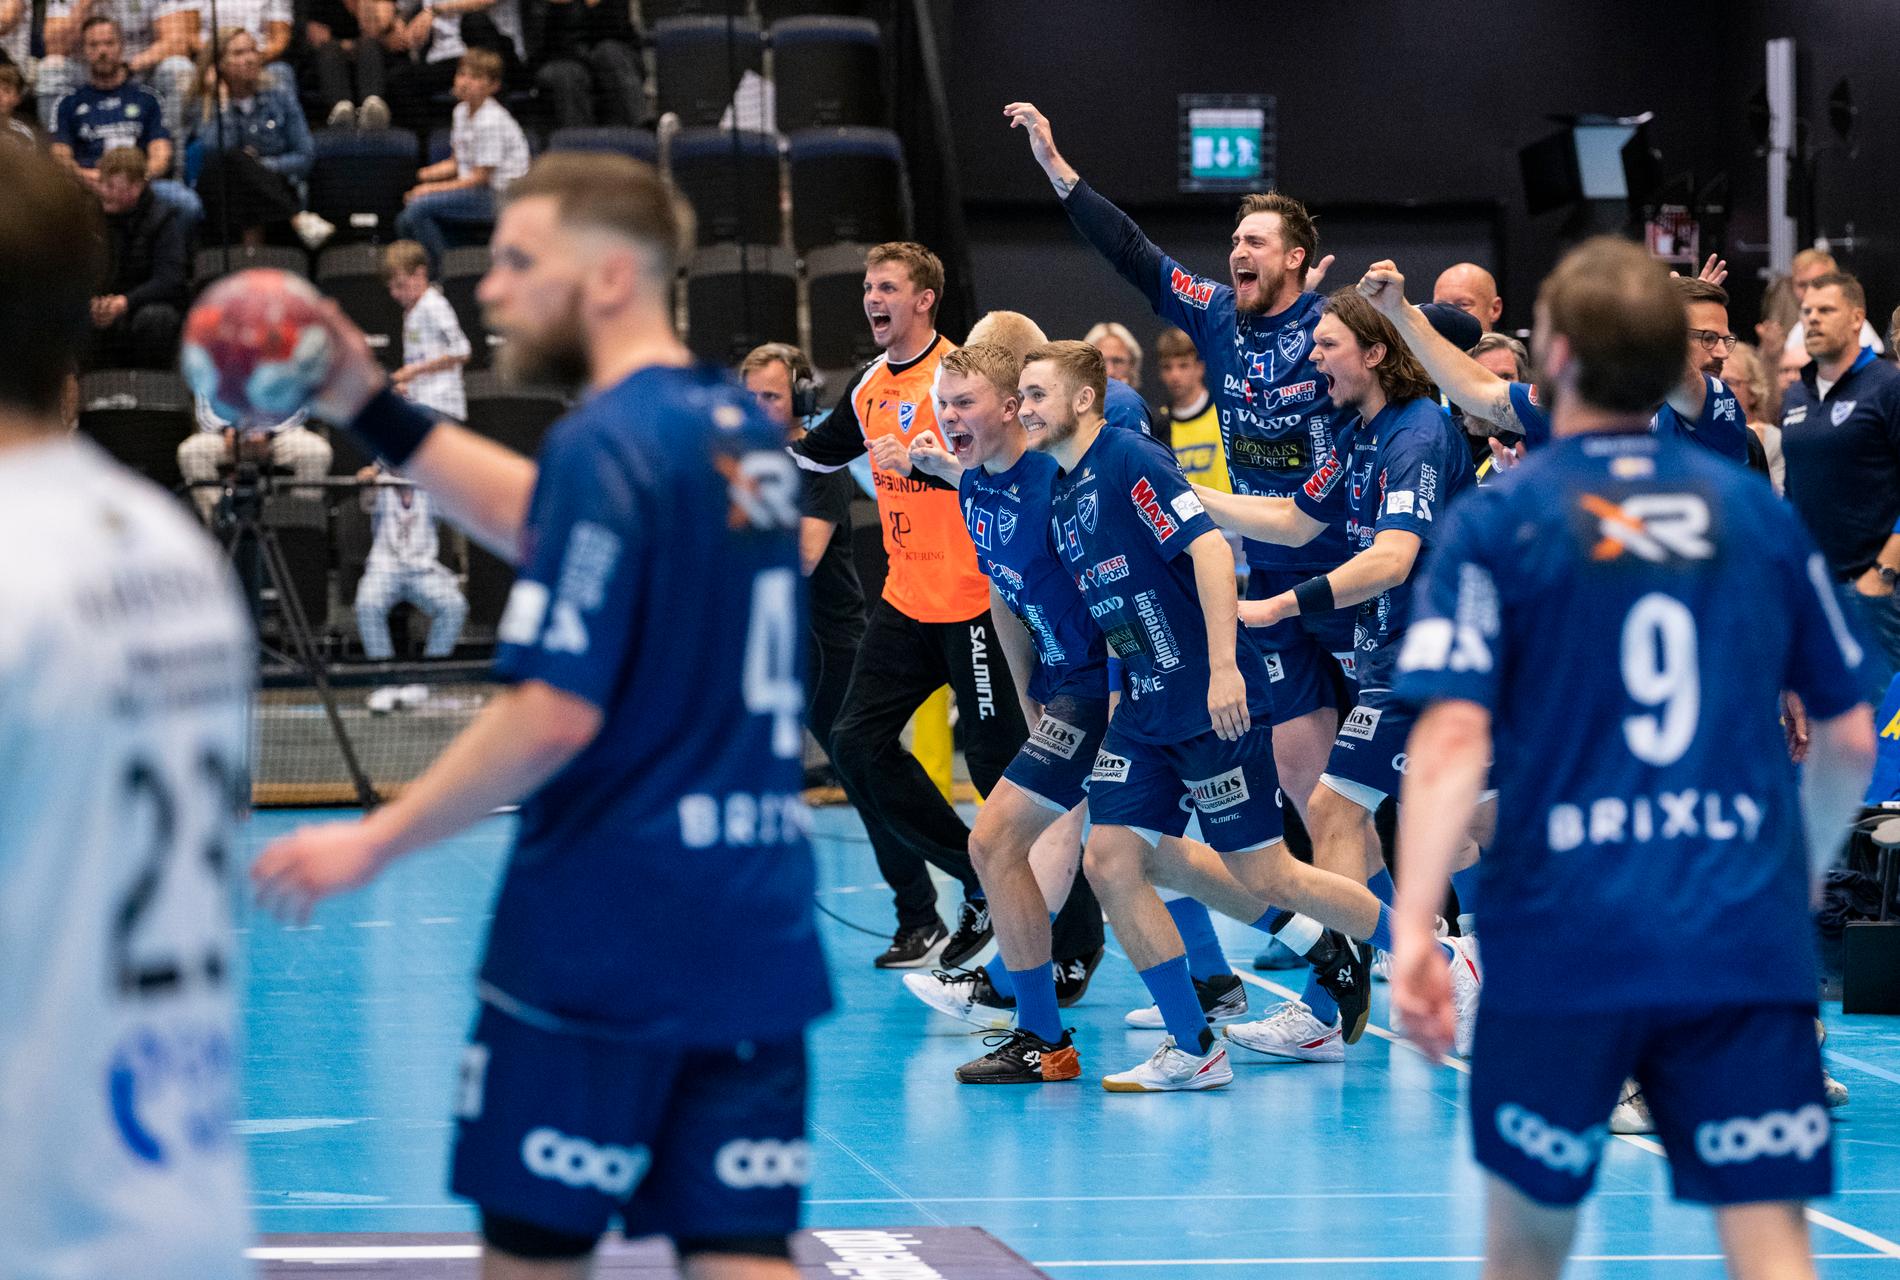 Skövdes spelare jublar efter slutsignalen i den andra SM-finalen i handboll mot Ystad.